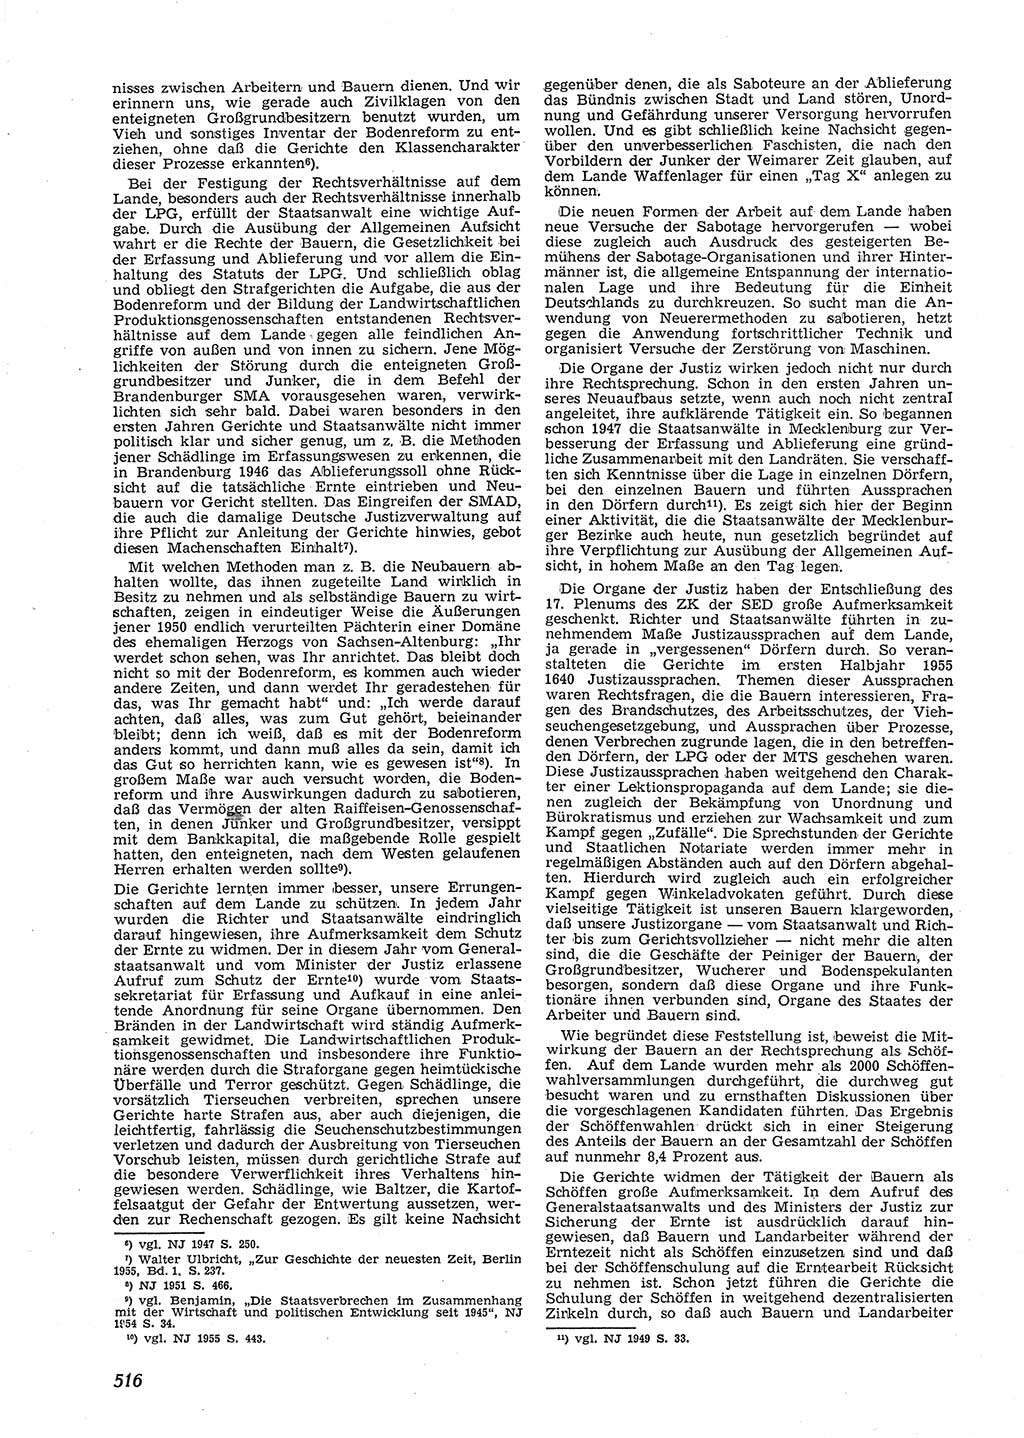 Neue Justiz (NJ), Zeitschrift für Recht und Rechtswissenschaft [Deutsche Demokratische Republik (DDR)], 9. Jahrgang 1955, Seite 516 (NJ DDR 1955, S. 516)